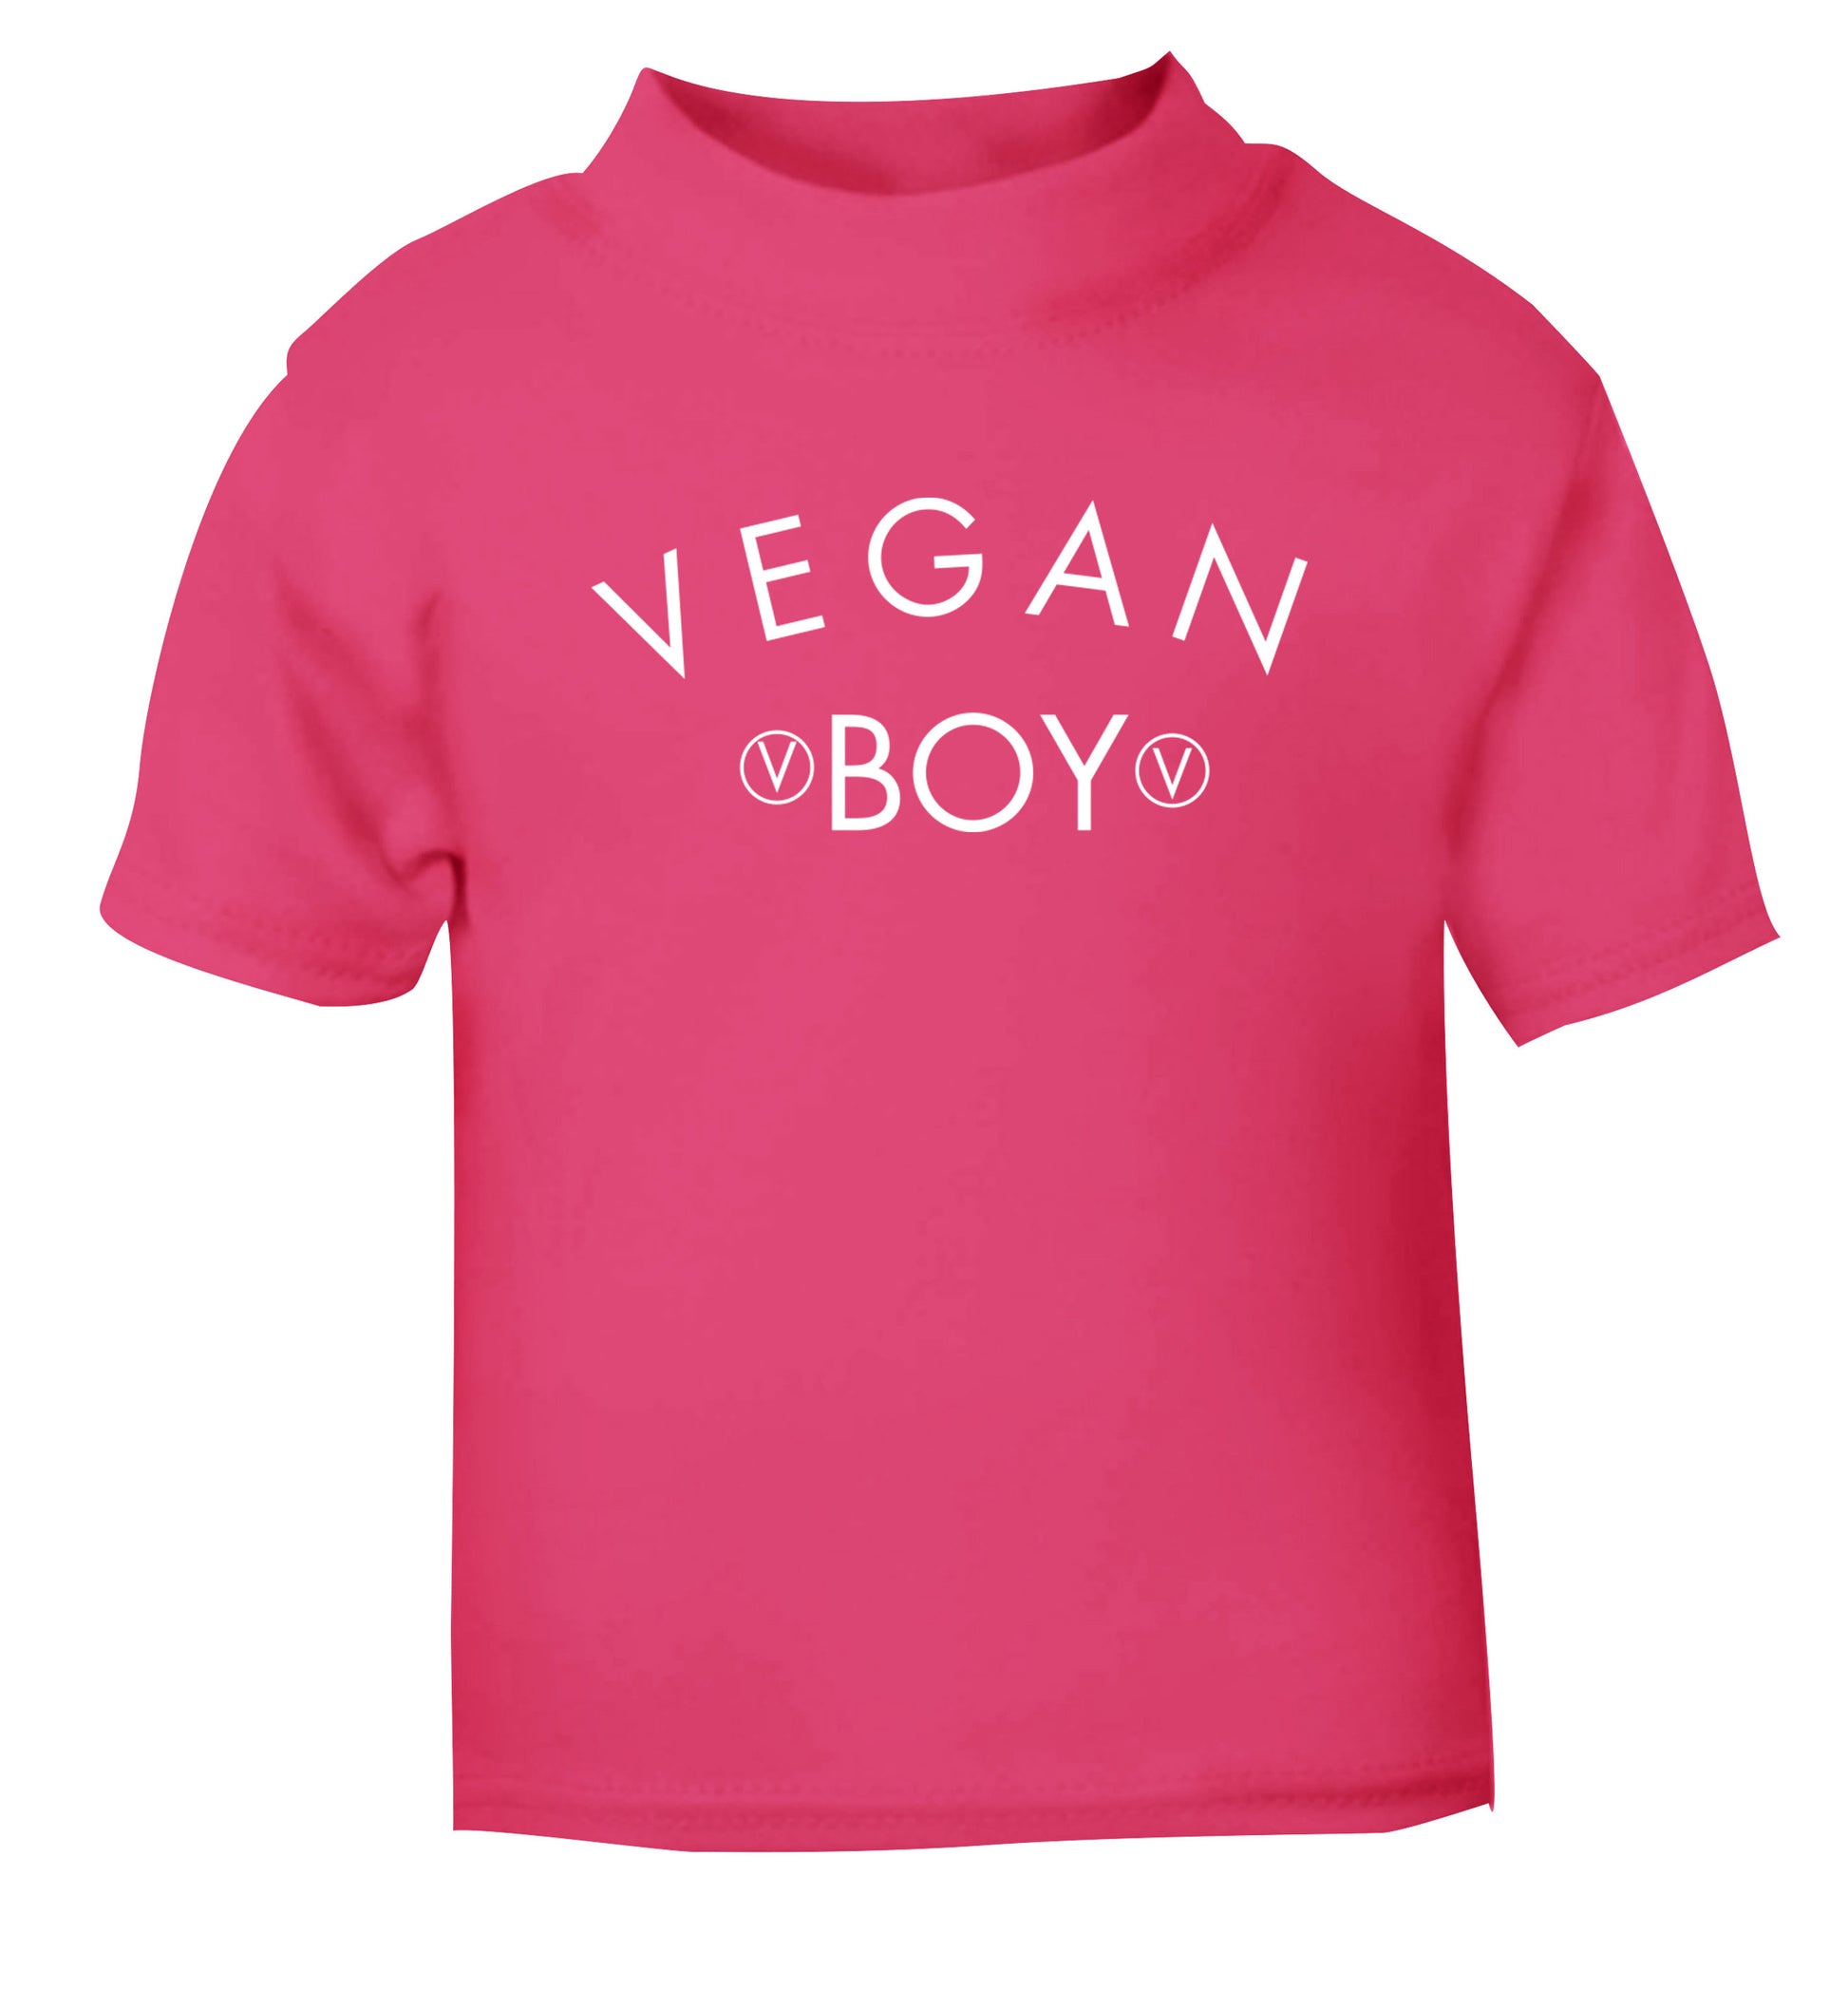 Vegan boy pink Baby Toddler Tshirt 2 Years